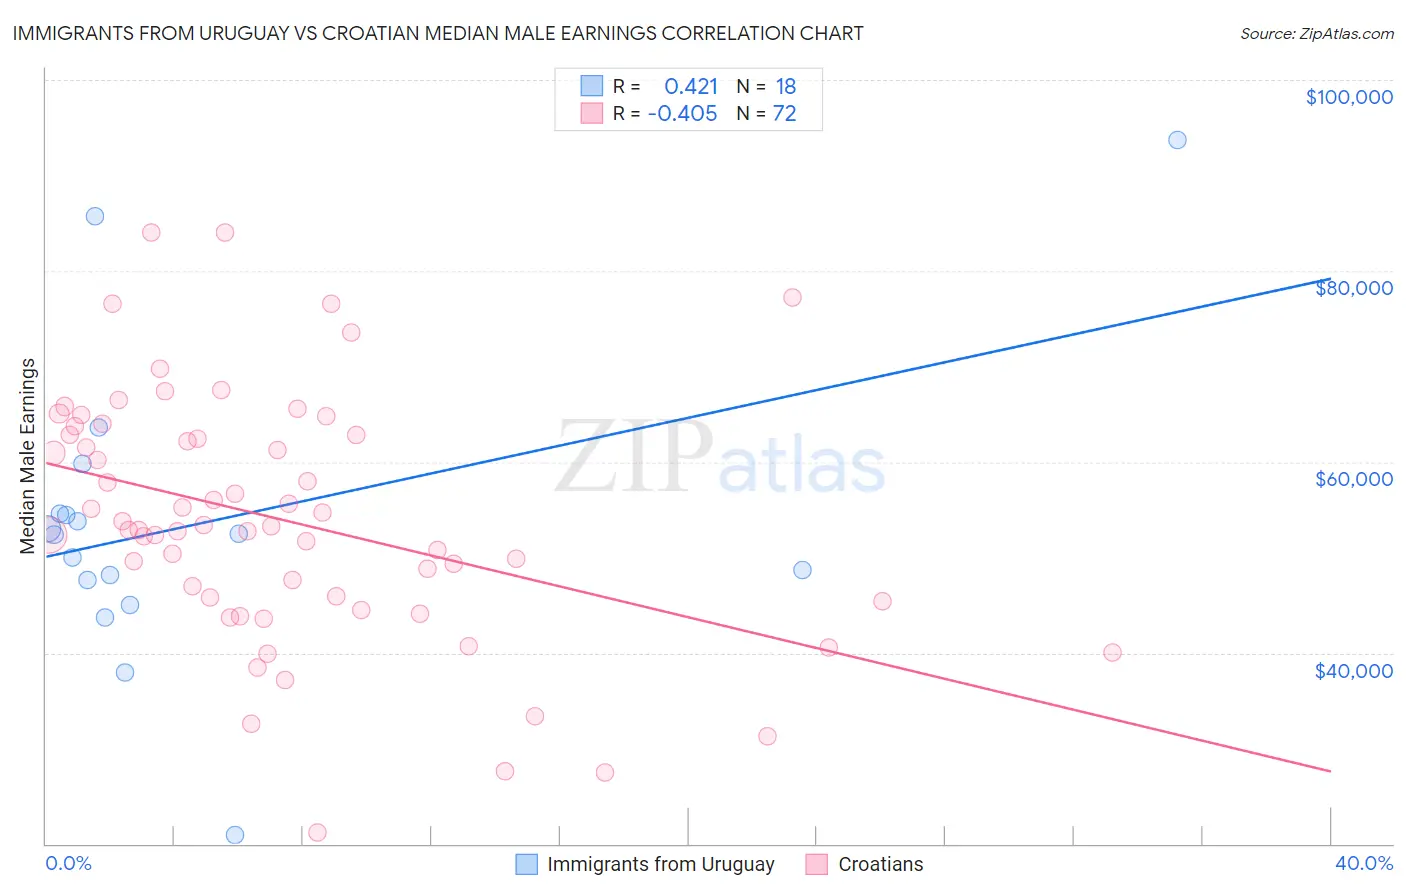 Immigrants from Uruguay vs Croatian Median Male Earnings